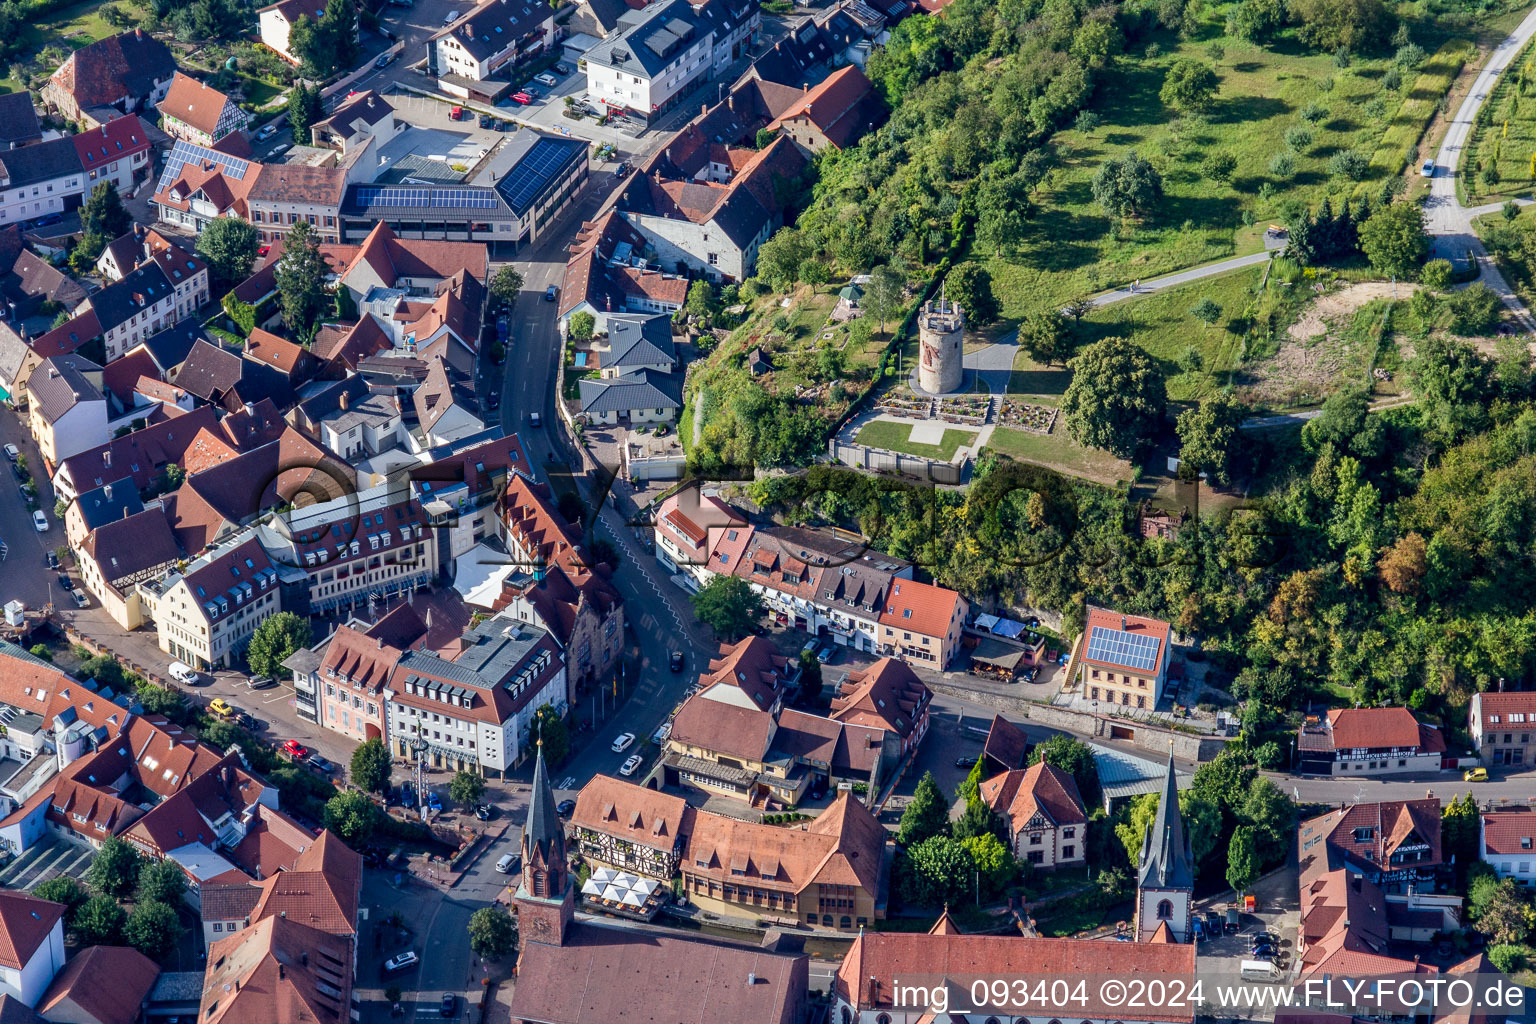 Vue aérienne de Tour de guet à Weingarten dans le département Bade-Wurtemberg, Allemagne